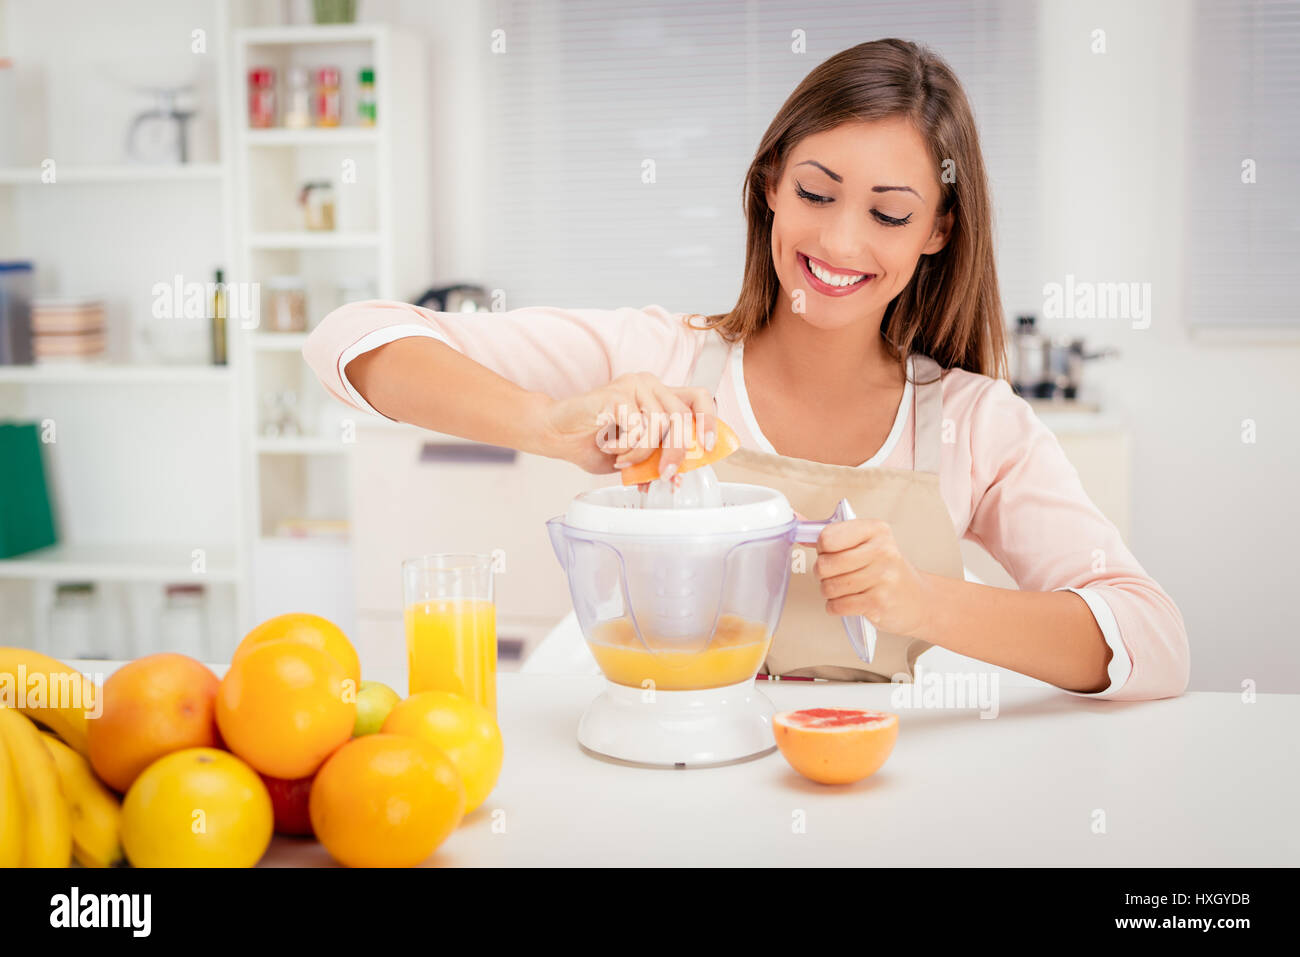 Bella giovane donna in cucina spremendo il succo d'arancia con un spremiagrumi elettrico. Foto Stock